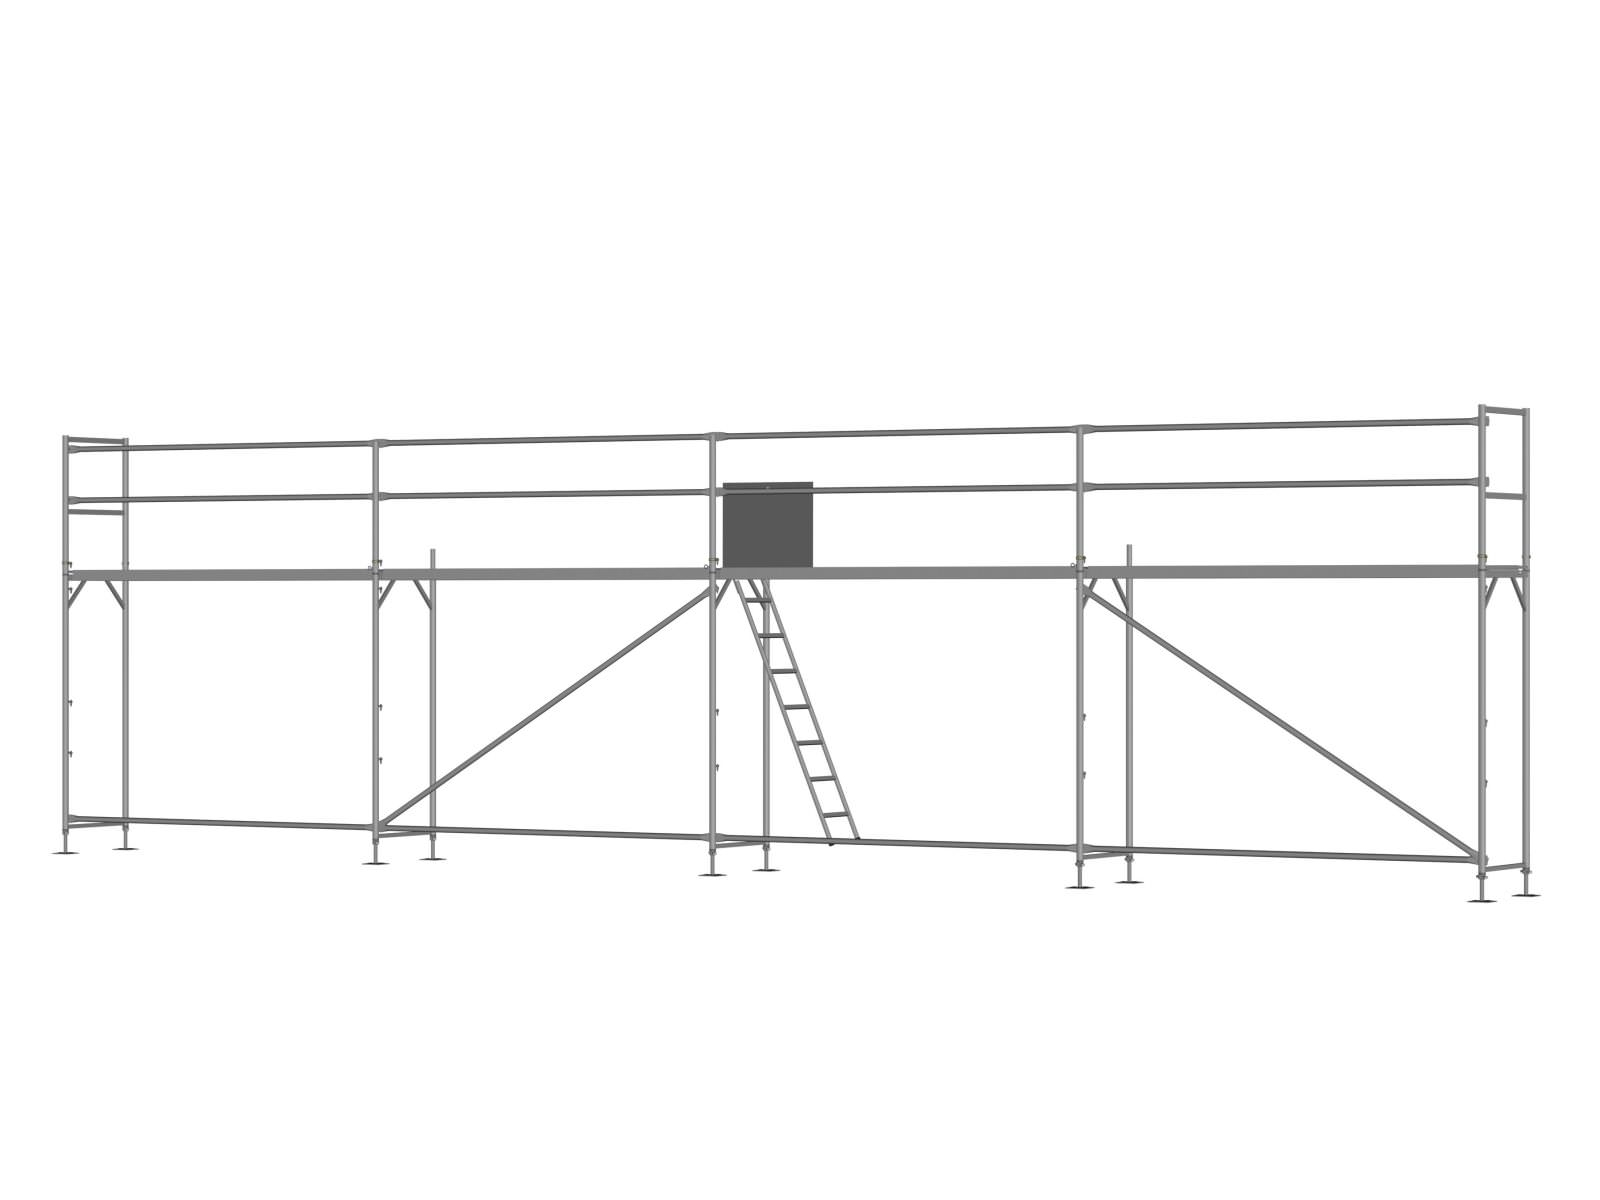 Stahl Traufseitengerüst 48 m² - 3,0 m Felder - 12 m lang - 4 m Arbeitshöhe - Basis-Gerüst inkl. Aufstieg & Befestigung